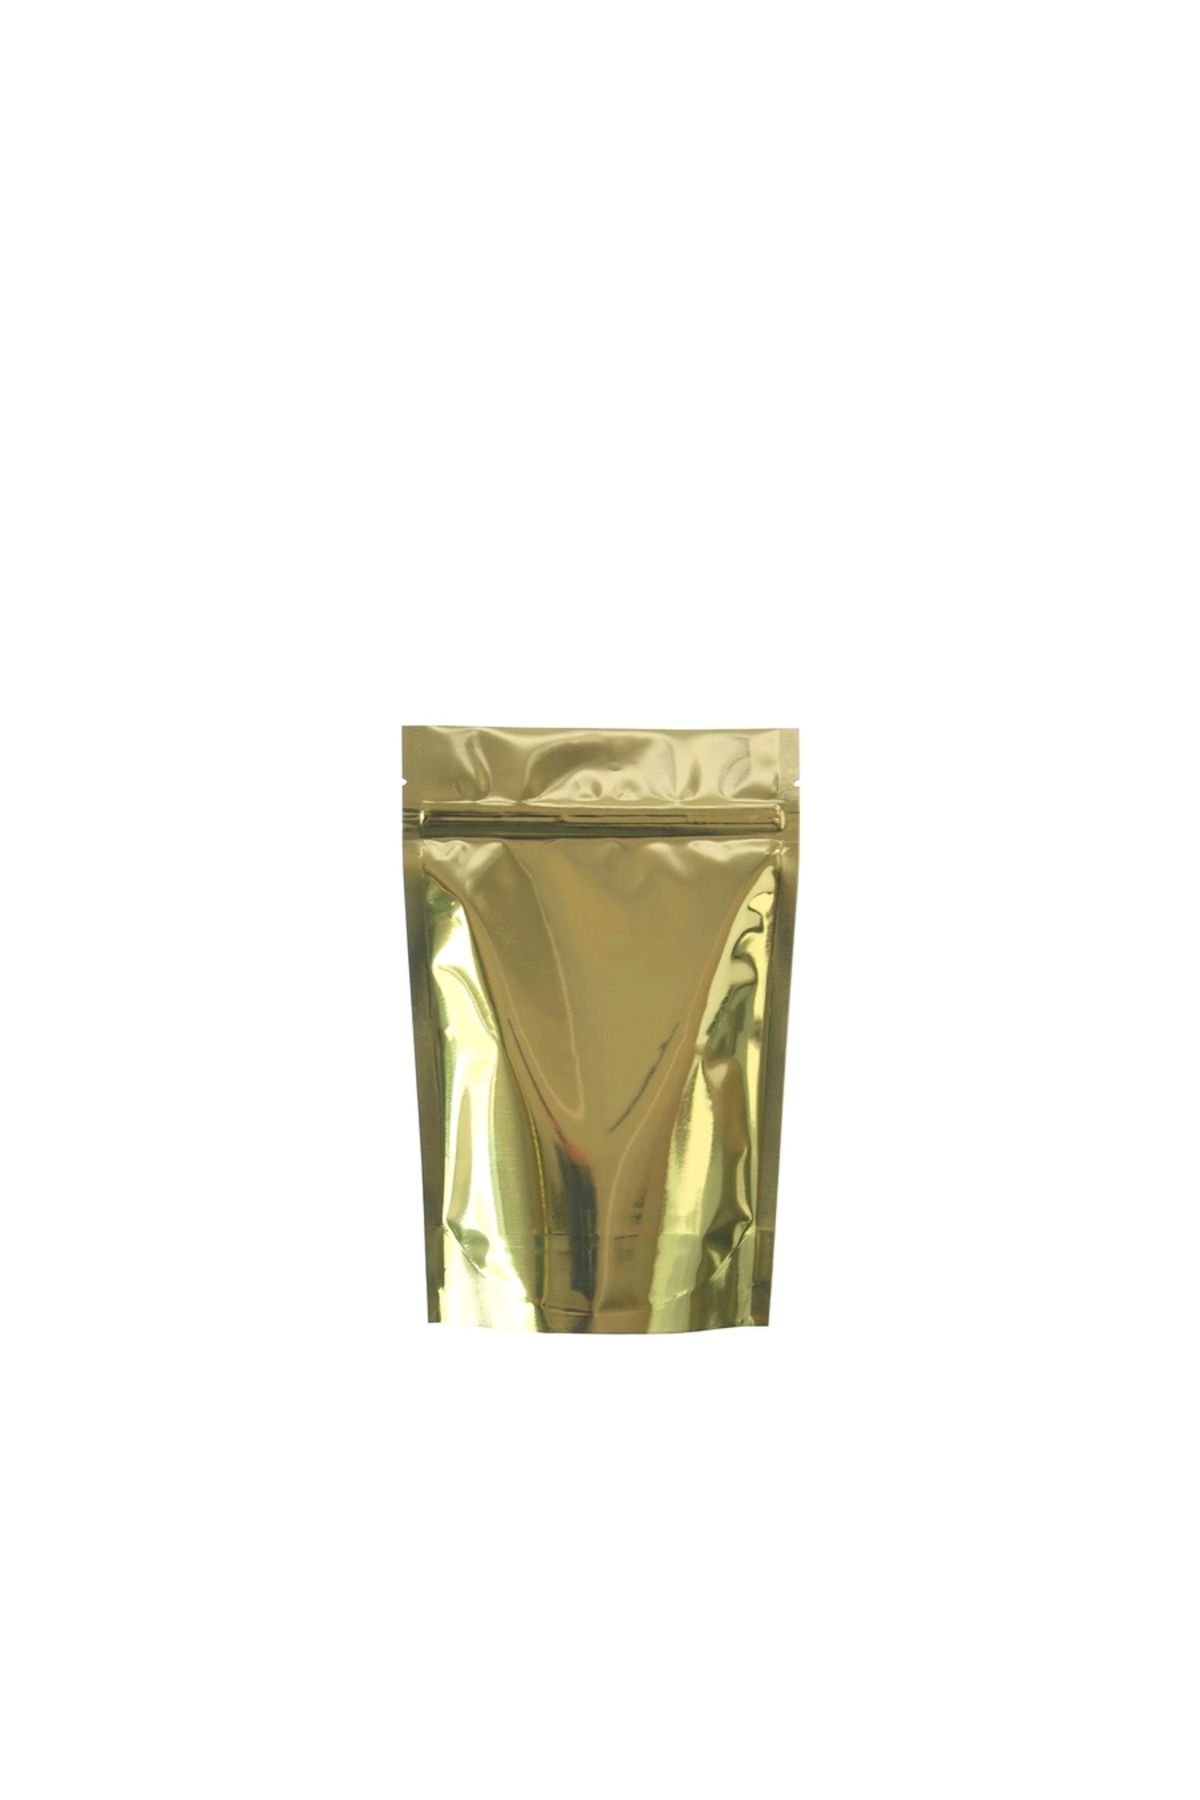 ofisturka Gold Alüminyum Doypack 11x18,5 cm - 100 Adet